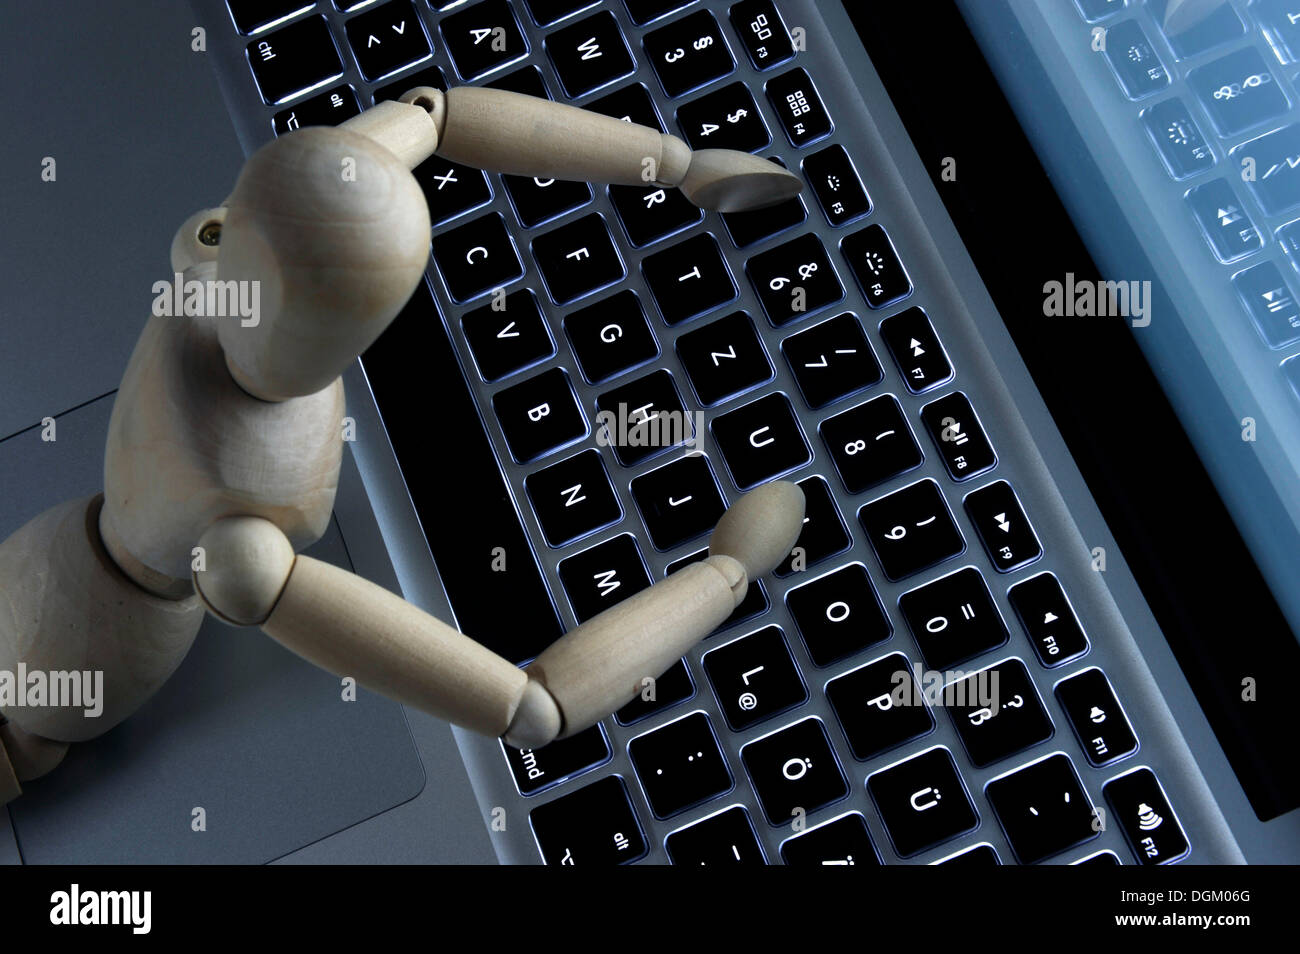 Maniqui en el teclado, la imagen simbólica para los seres humanos y los ordenadores Foto de stock